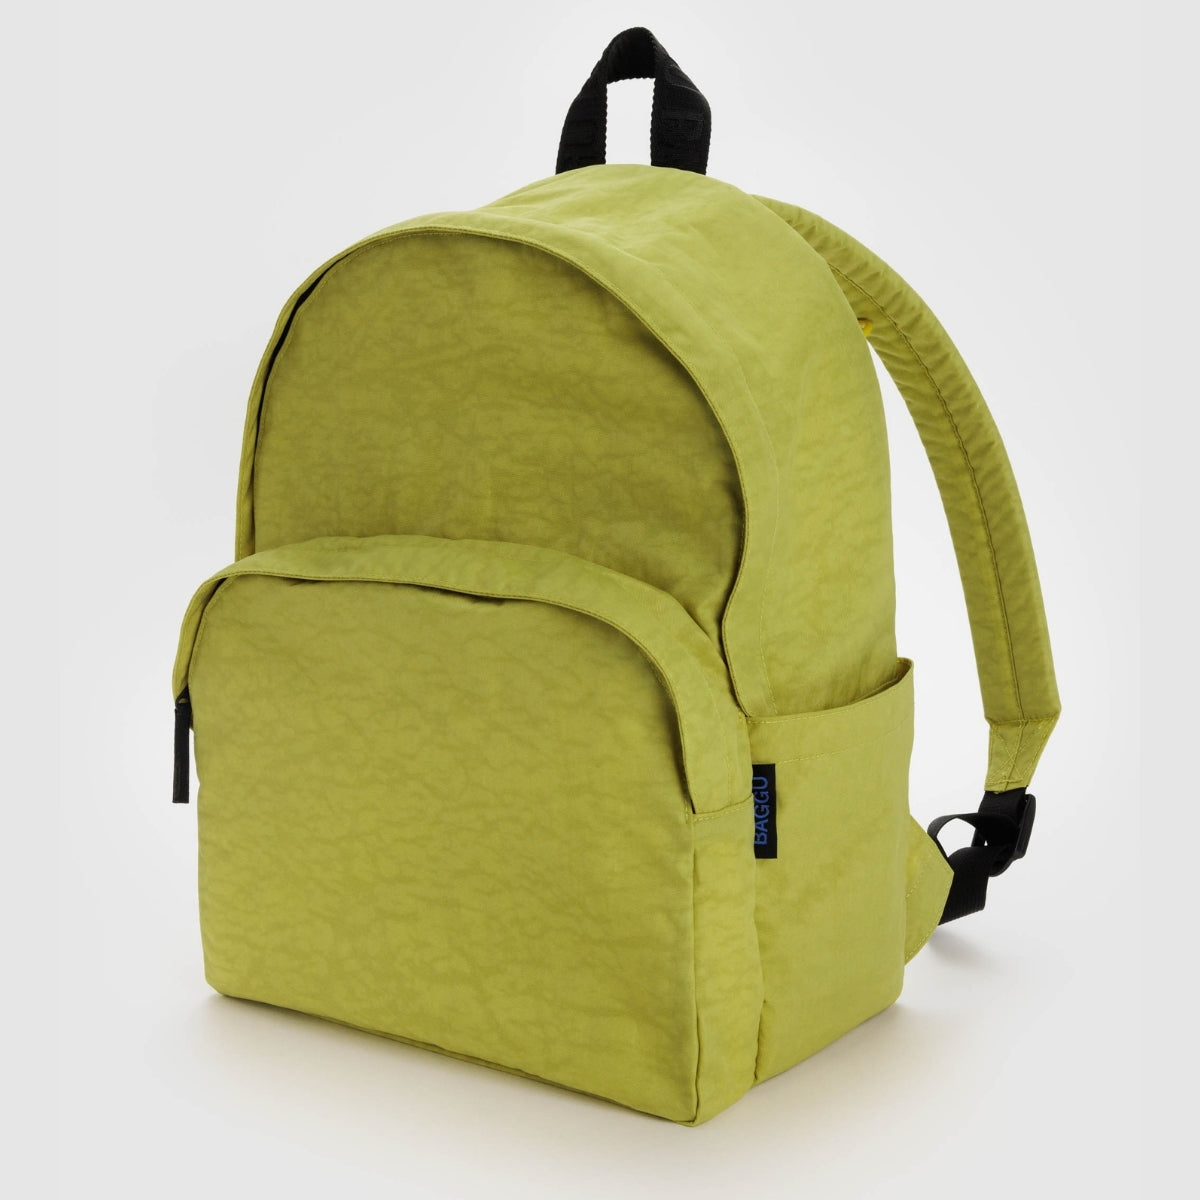 Baggu Large Nylon Backpack in Lemongrass